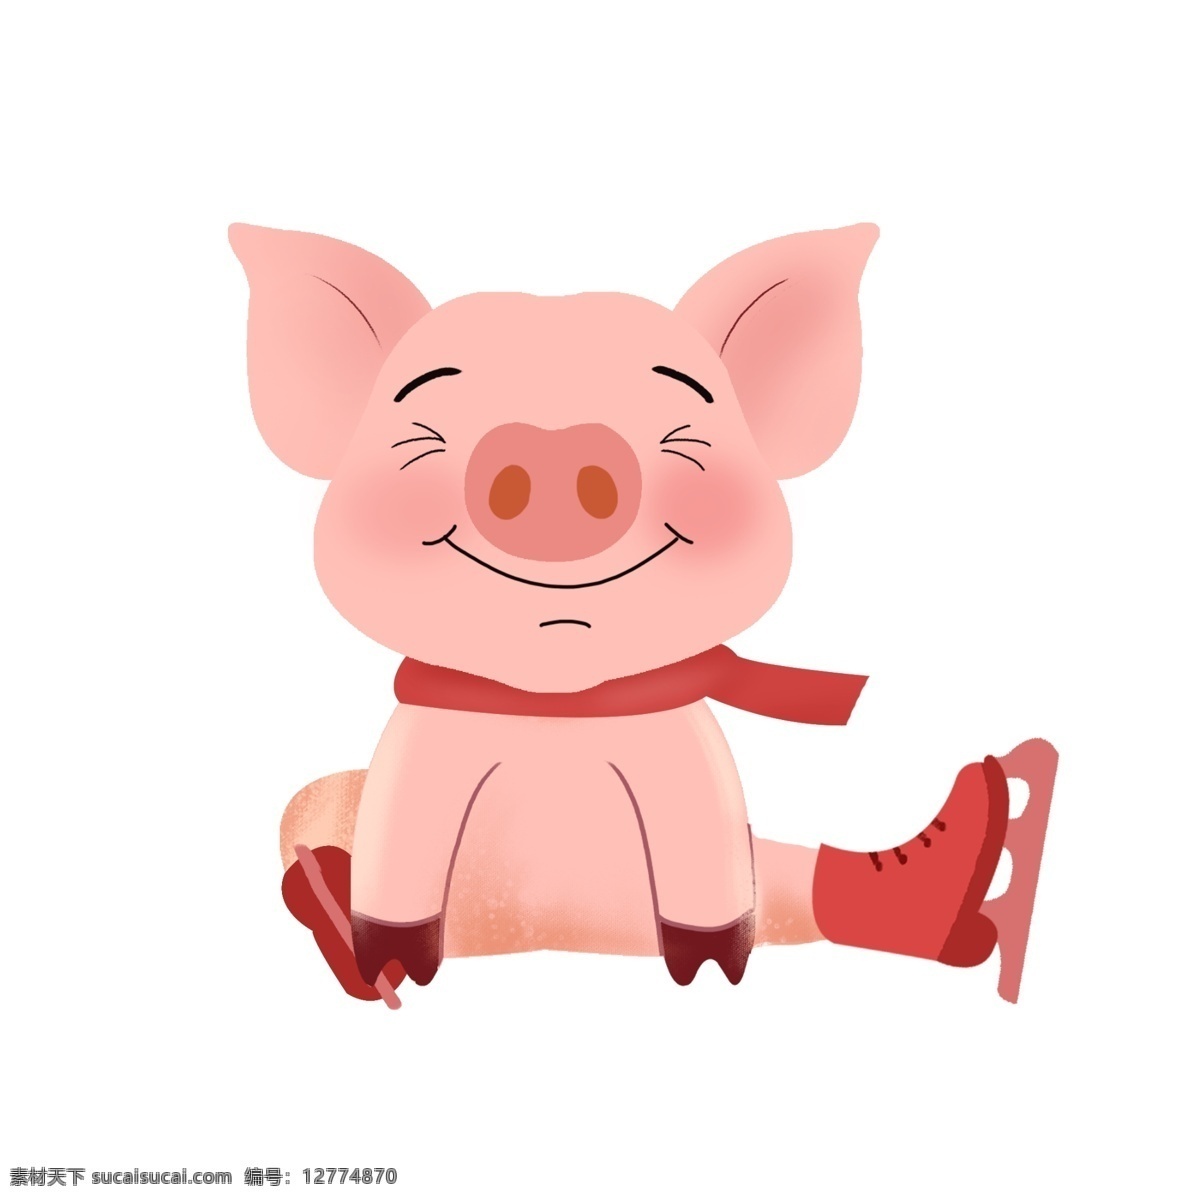 喜庆 新年 猪年 溜冰 猪 免 扣 插画 溜冰猪 小猪 可爱 新年猪年 2019猪年 新年快乐 摔倒溜冰猪 开心小猪